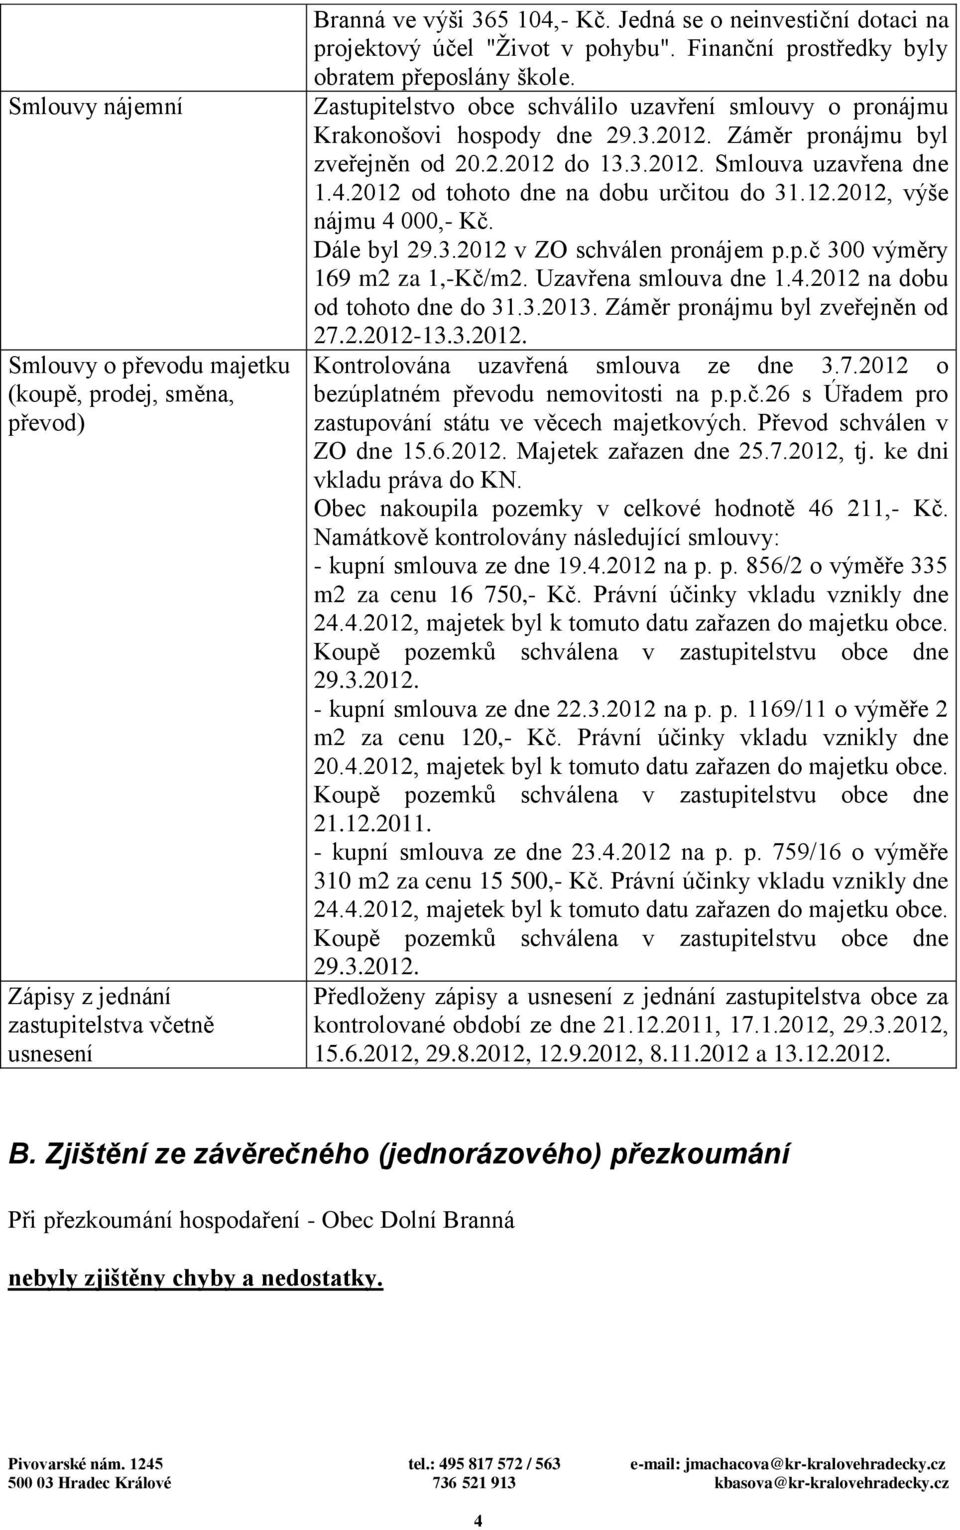 Zastupitelstvo obce schválilo uzavření smlouvy o pronájmu Krakonošovi hospody dne 29.3.2012. Záměr pronájmu byl zveřejněn od 20.2.2012 do 13.3.2012. Smlouva uzavřena dne 1.4.